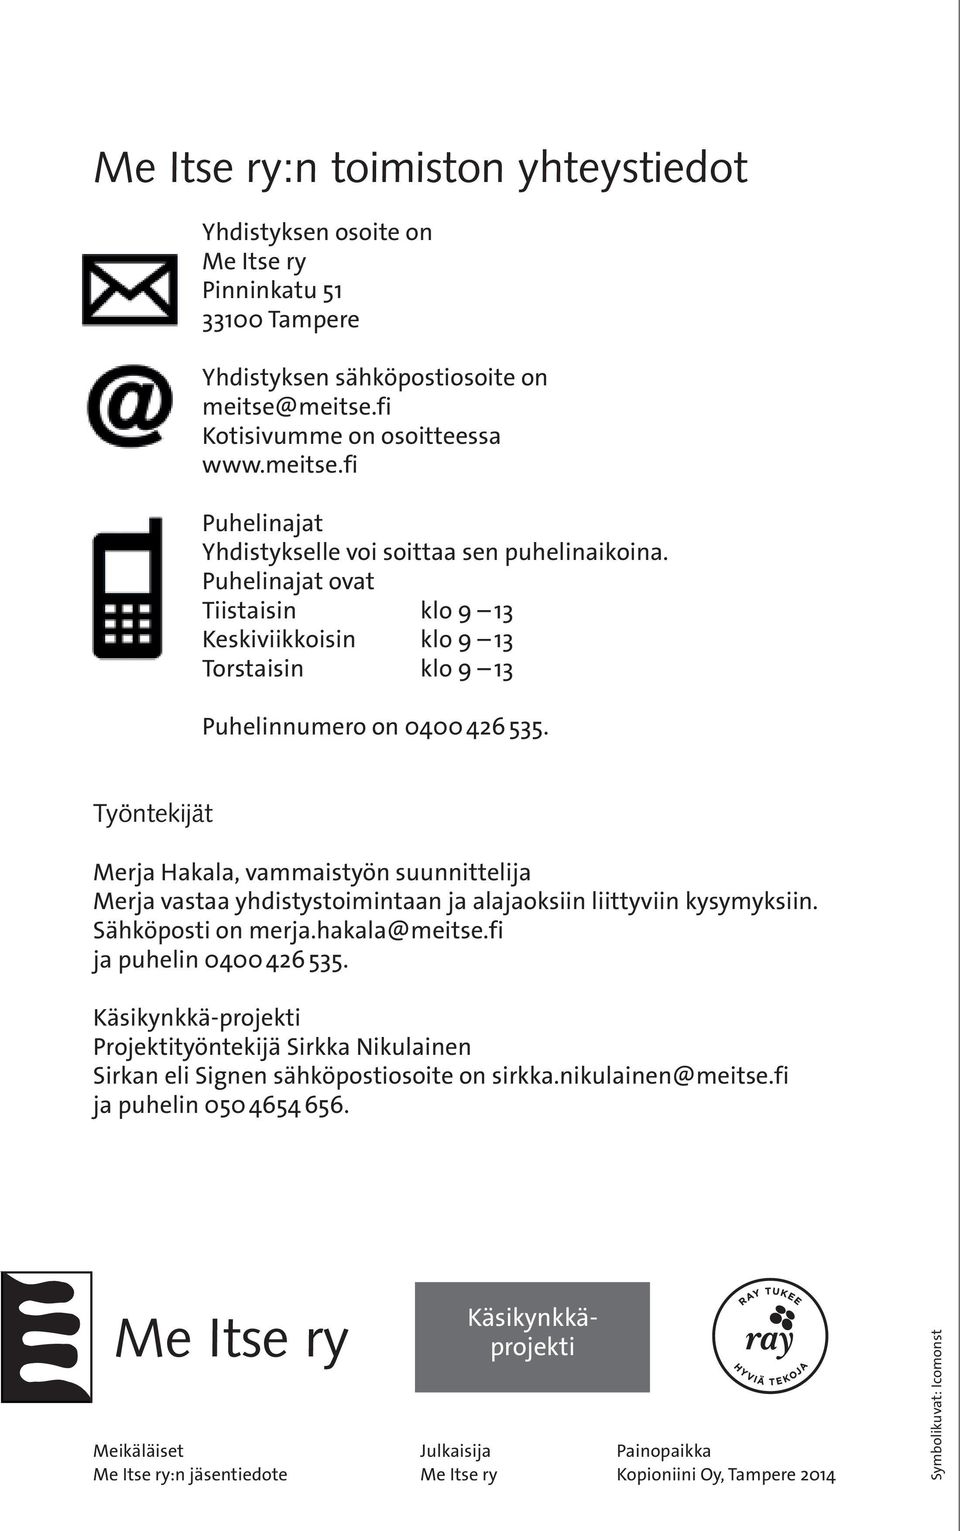 Työntekijät Merja Hakala, vammaistyön suunnittelija Merja vastaa yhdistystoimintaan ja alajaoksiin liittyviin kysymyksiin. Sähköposti on merja.hakala@meitse.fi ja puhelin 0400 426 535.